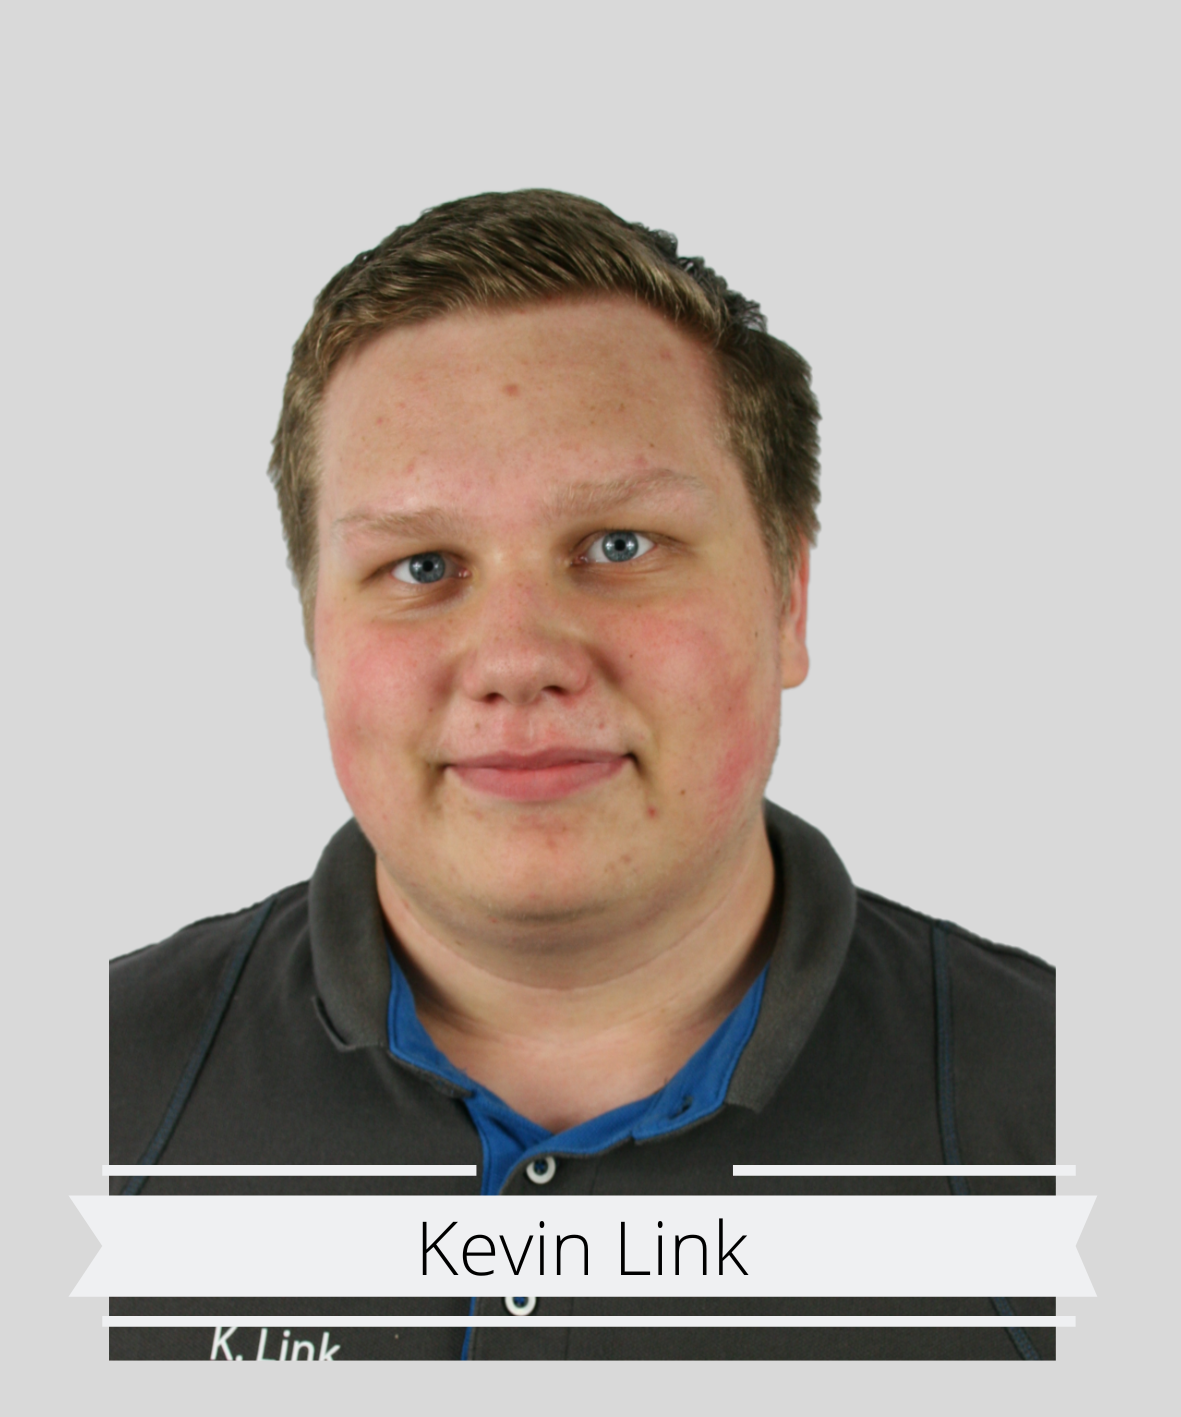 Kevin Link